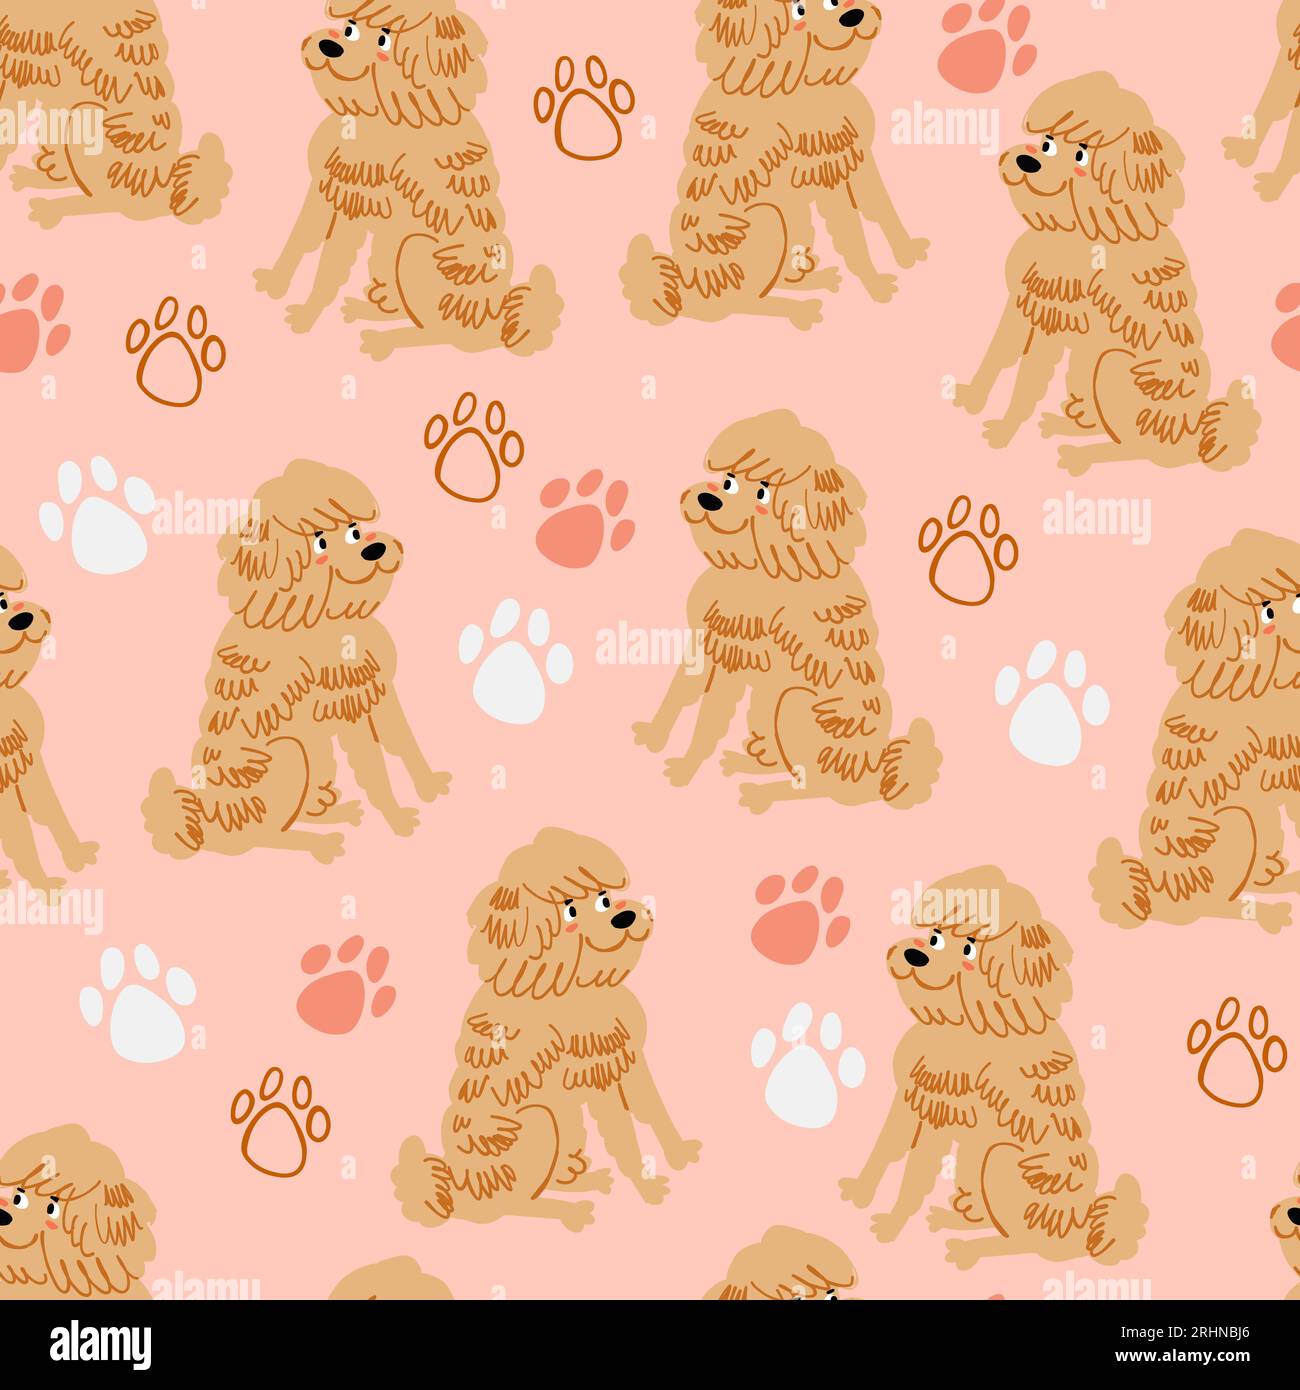 Nahtloses Vektor-Muster mit süßen flauschigen Hunde- und Pfotendrucken, Kindermuster mit Hunden auf rosa Hintergrund. Handgezeichnetes Tiermuster. Vektorillustration Stock Vektor